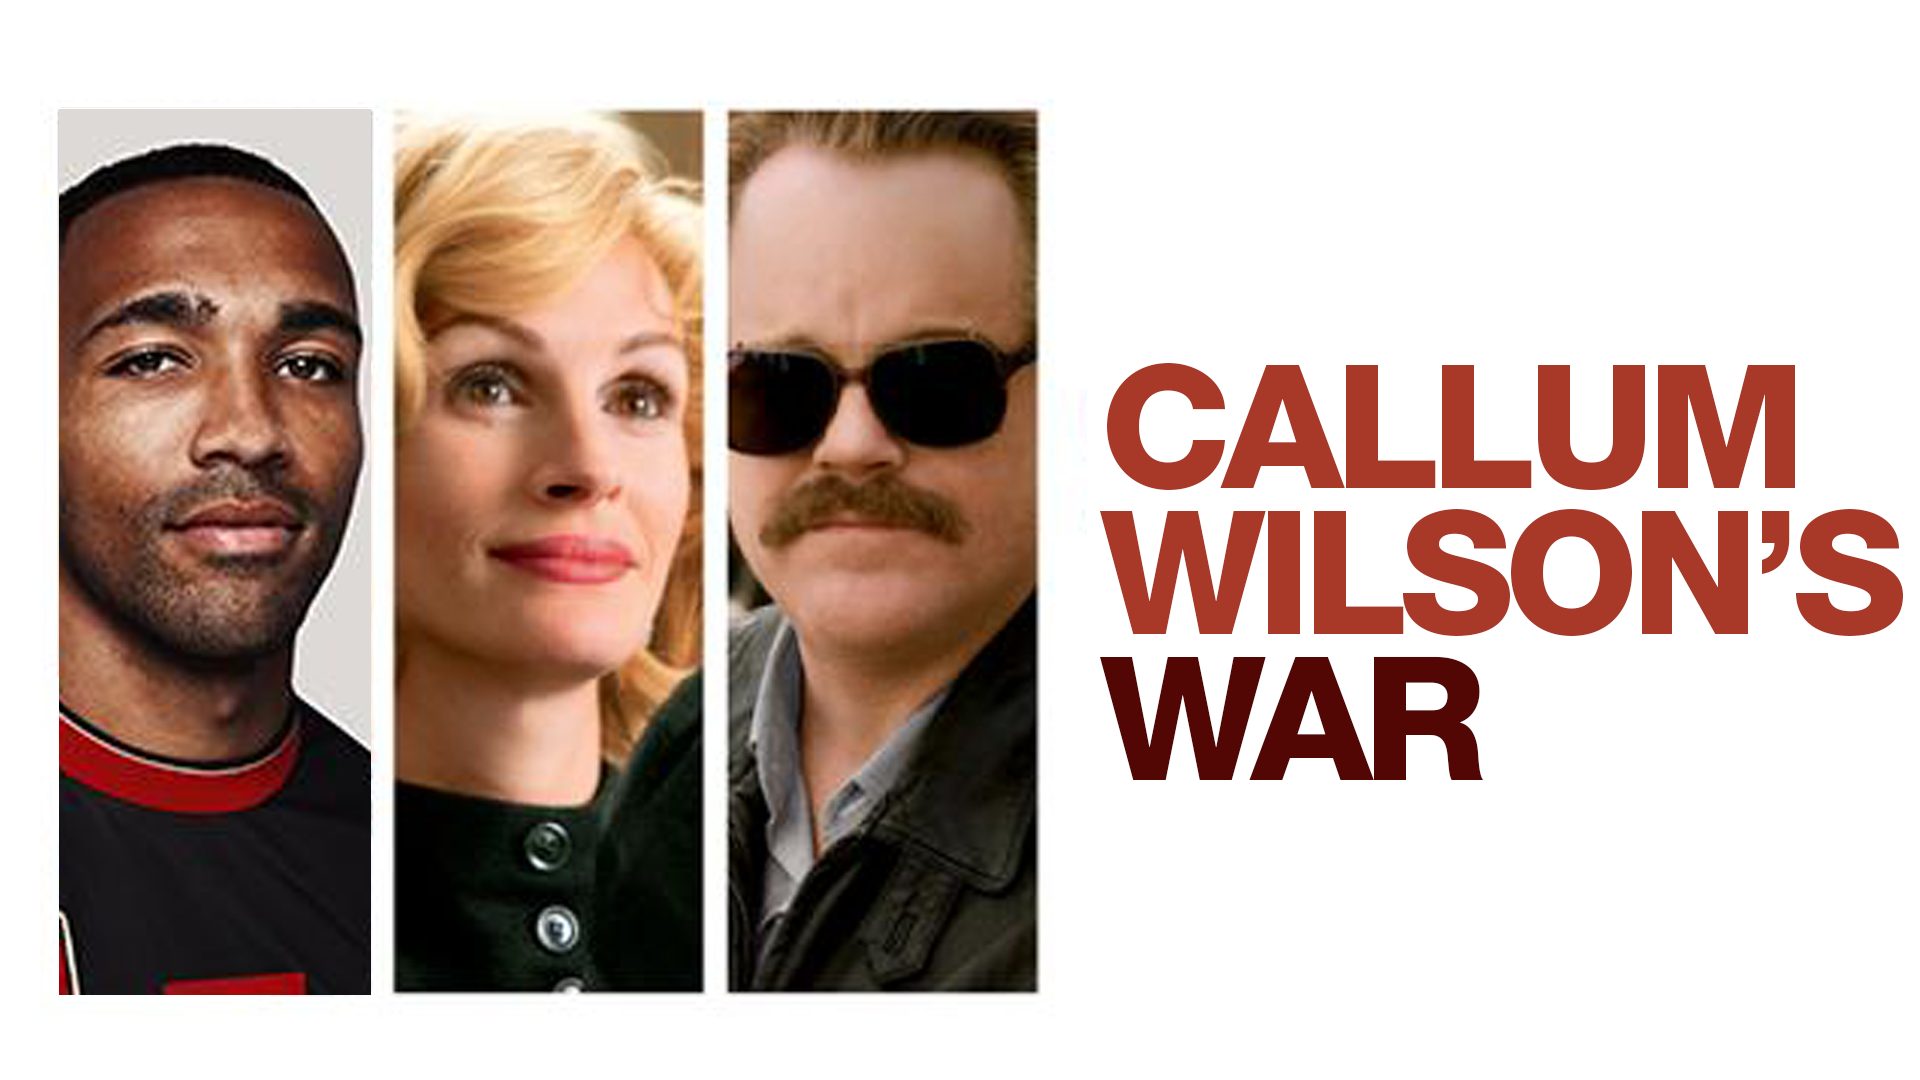 Callum Wilson's War